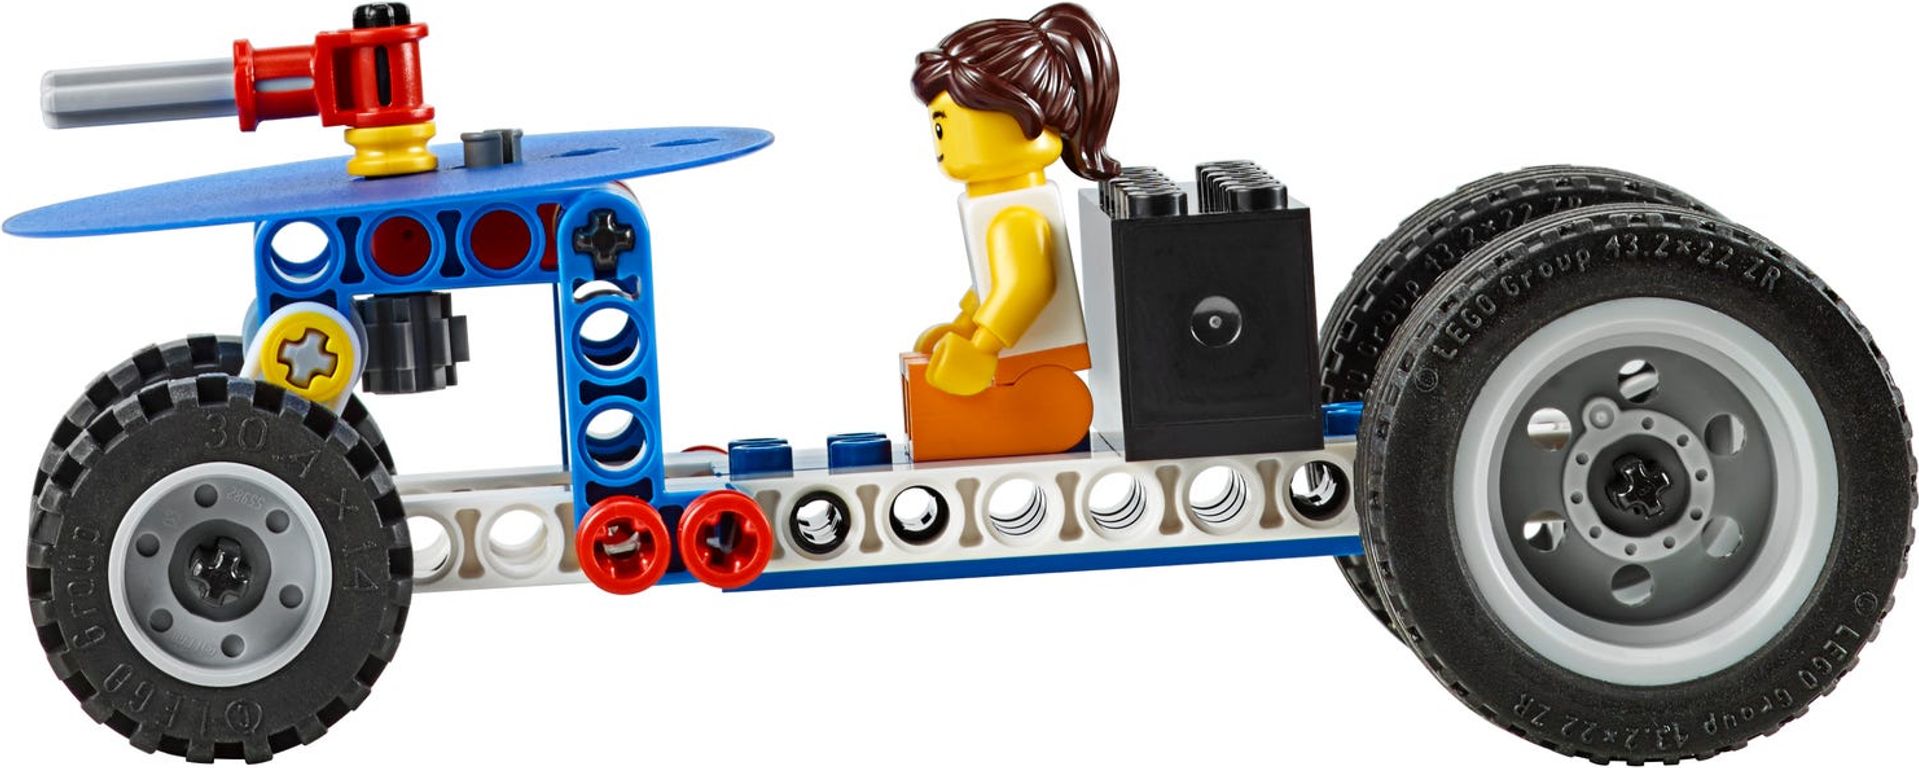 LEGO® Education Naturwissenschaft und Technik Set komponenten